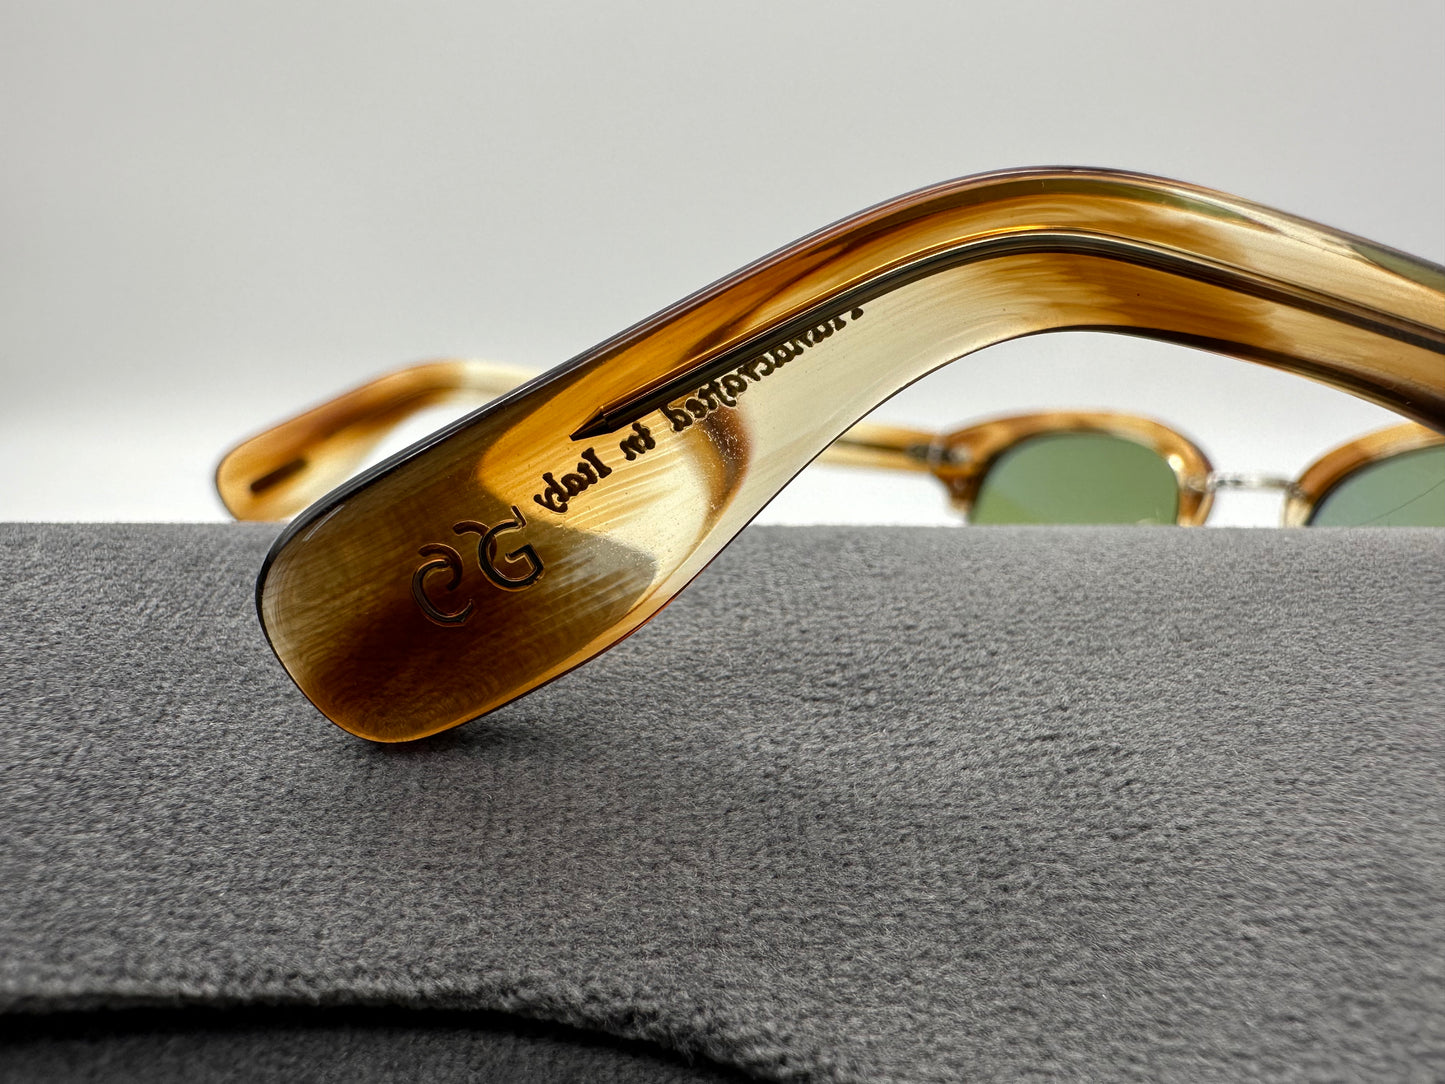 Oliver Peoples Cary Grant 2 50mm Honey VSB Green Custom Glass Lenses